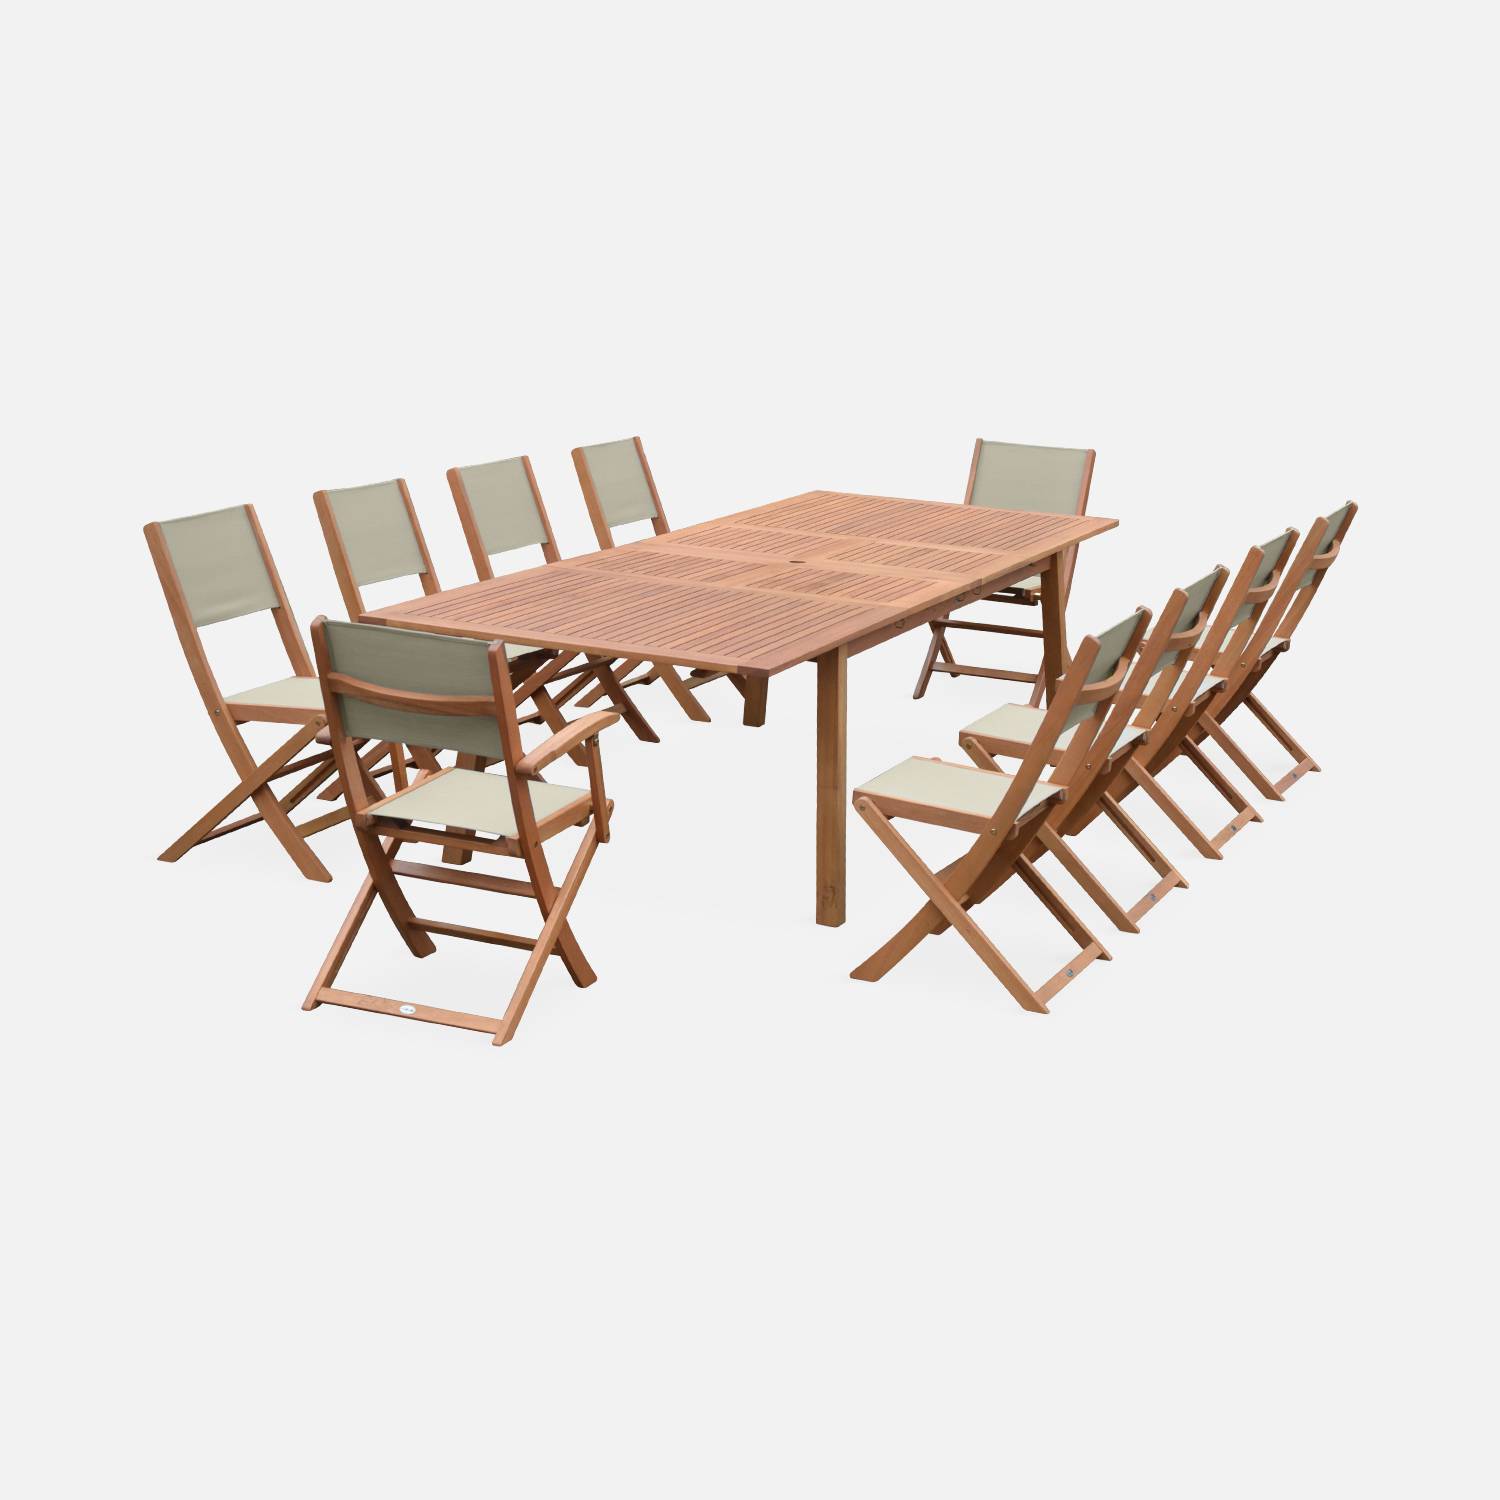 Ausziehbare Gartenmöbel aus Holz - Almeria Tisch 200/250/300cm mit 2 Verlängerungen, 2 Sesseln und 8 Stühlen, aus geöltem FSC Eukalyptusholz und taupgrau Textilene Photo3